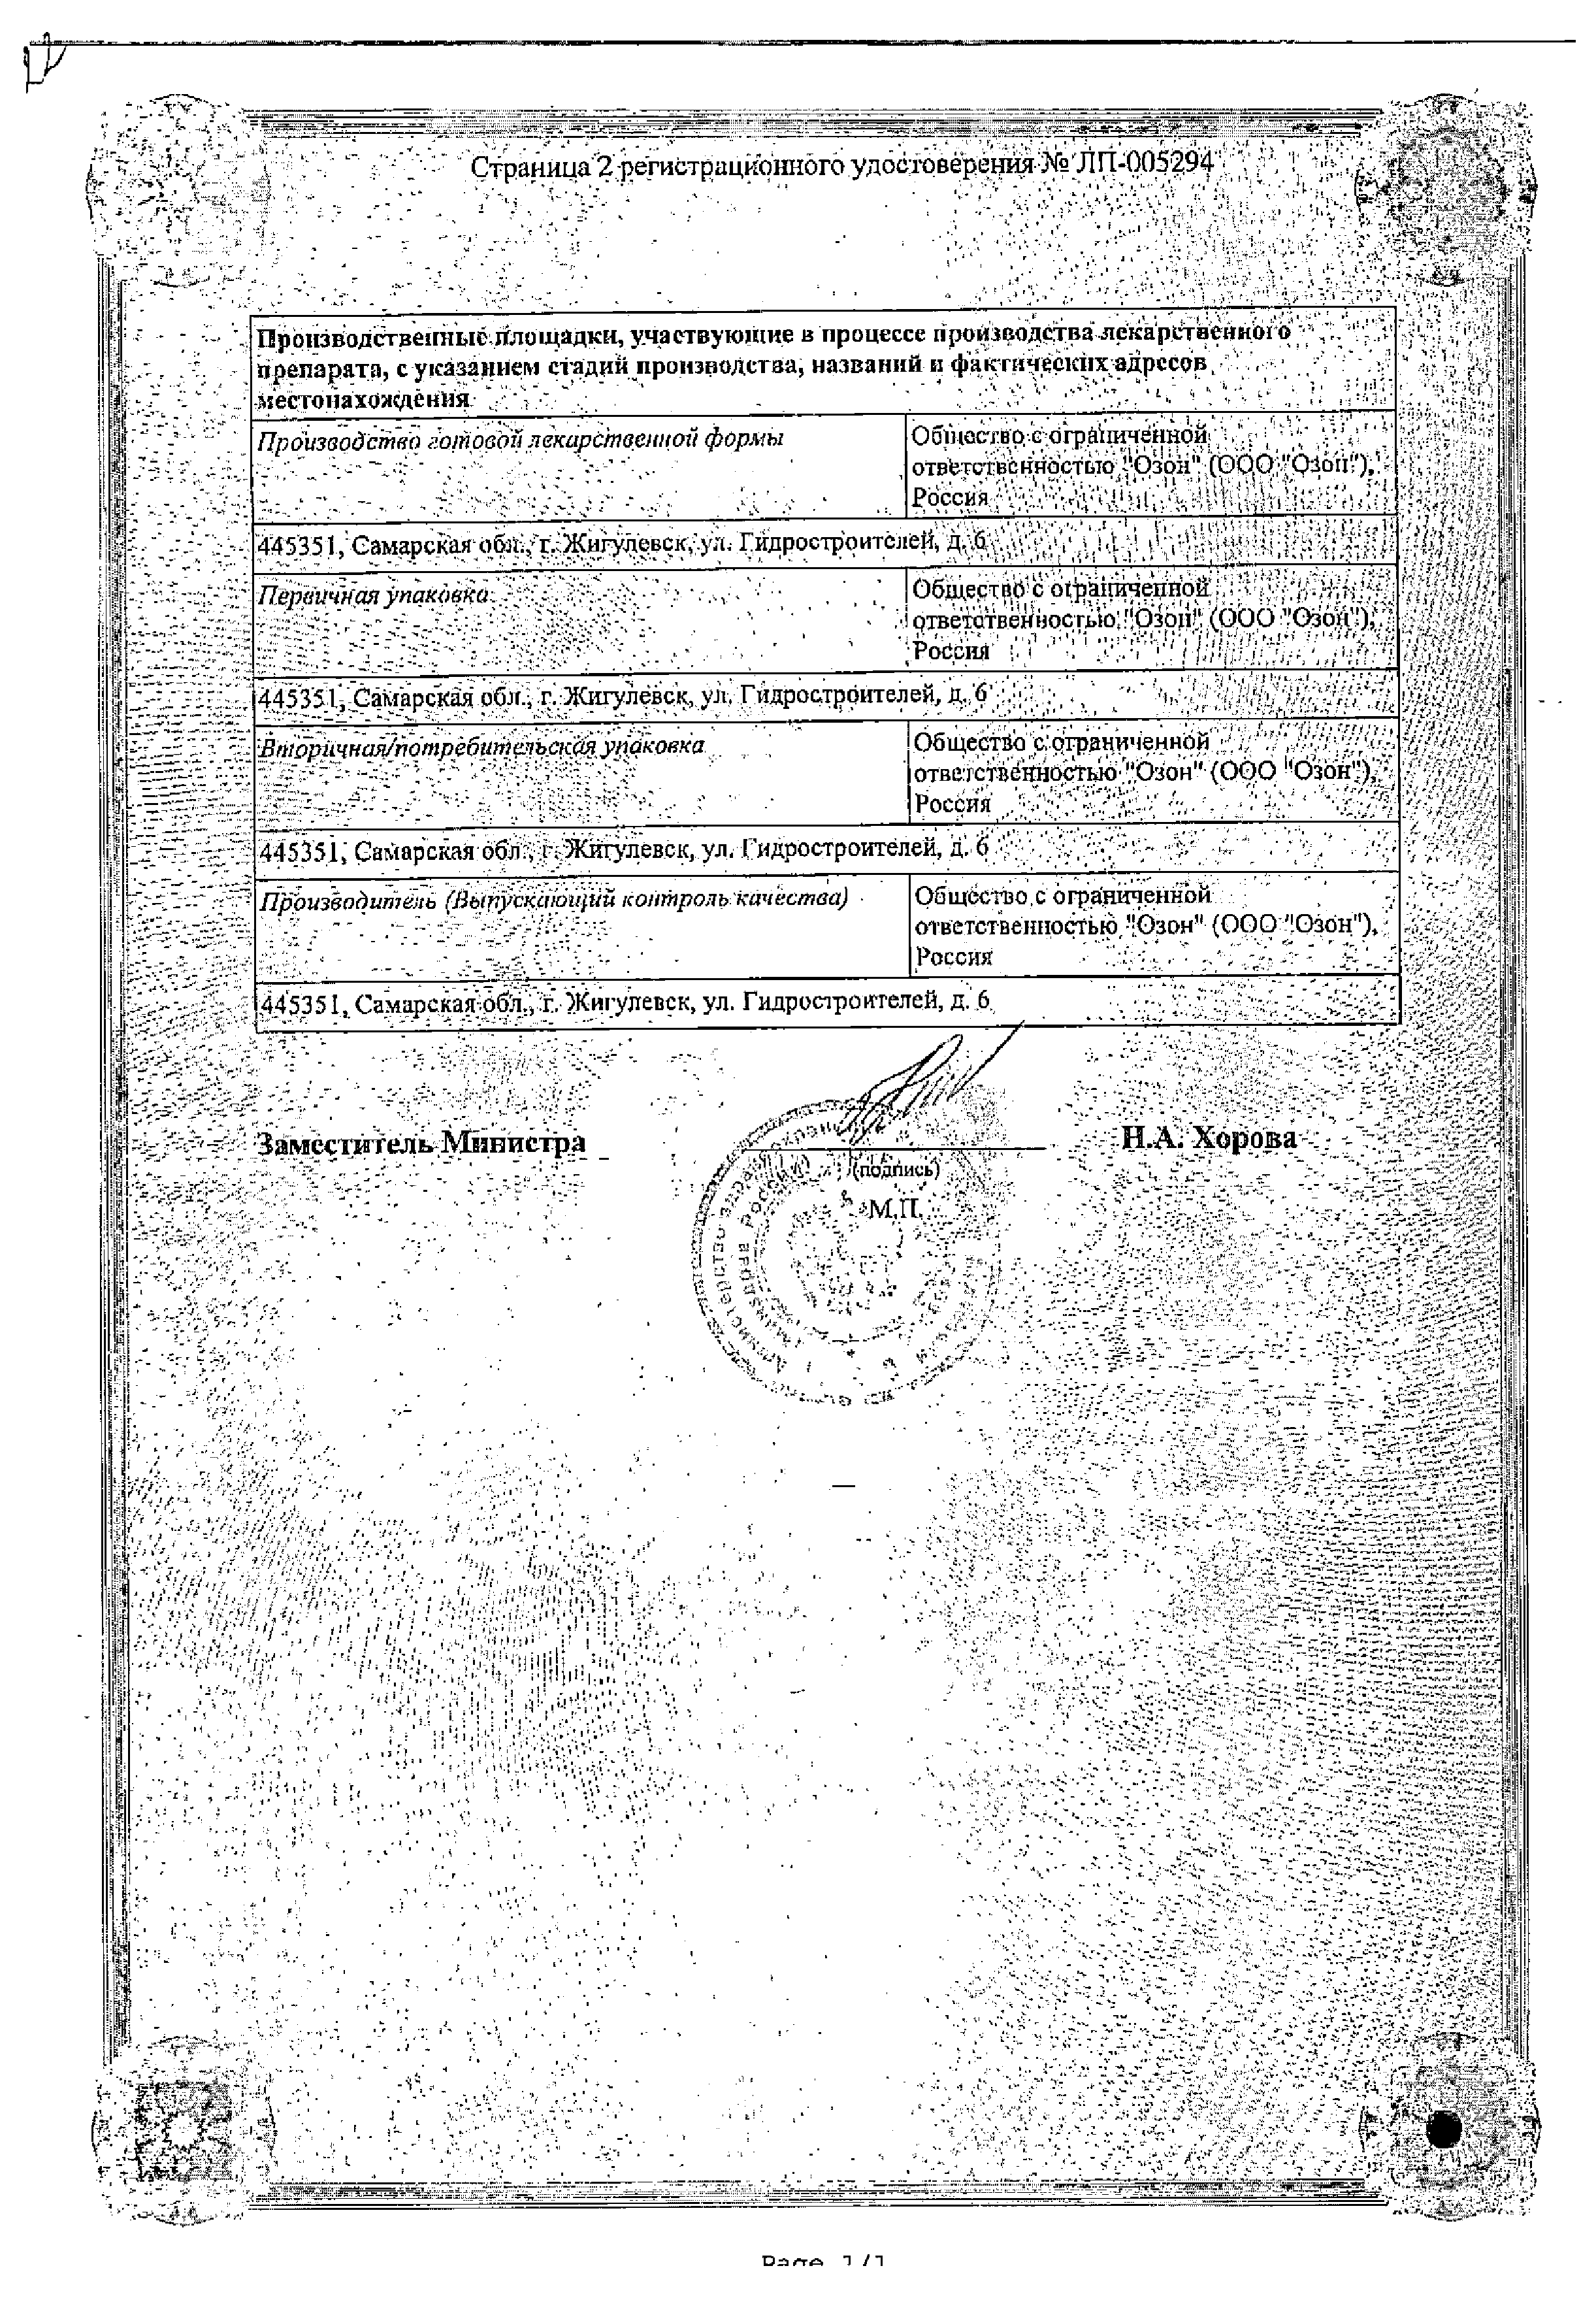 Мельдоний сертификат